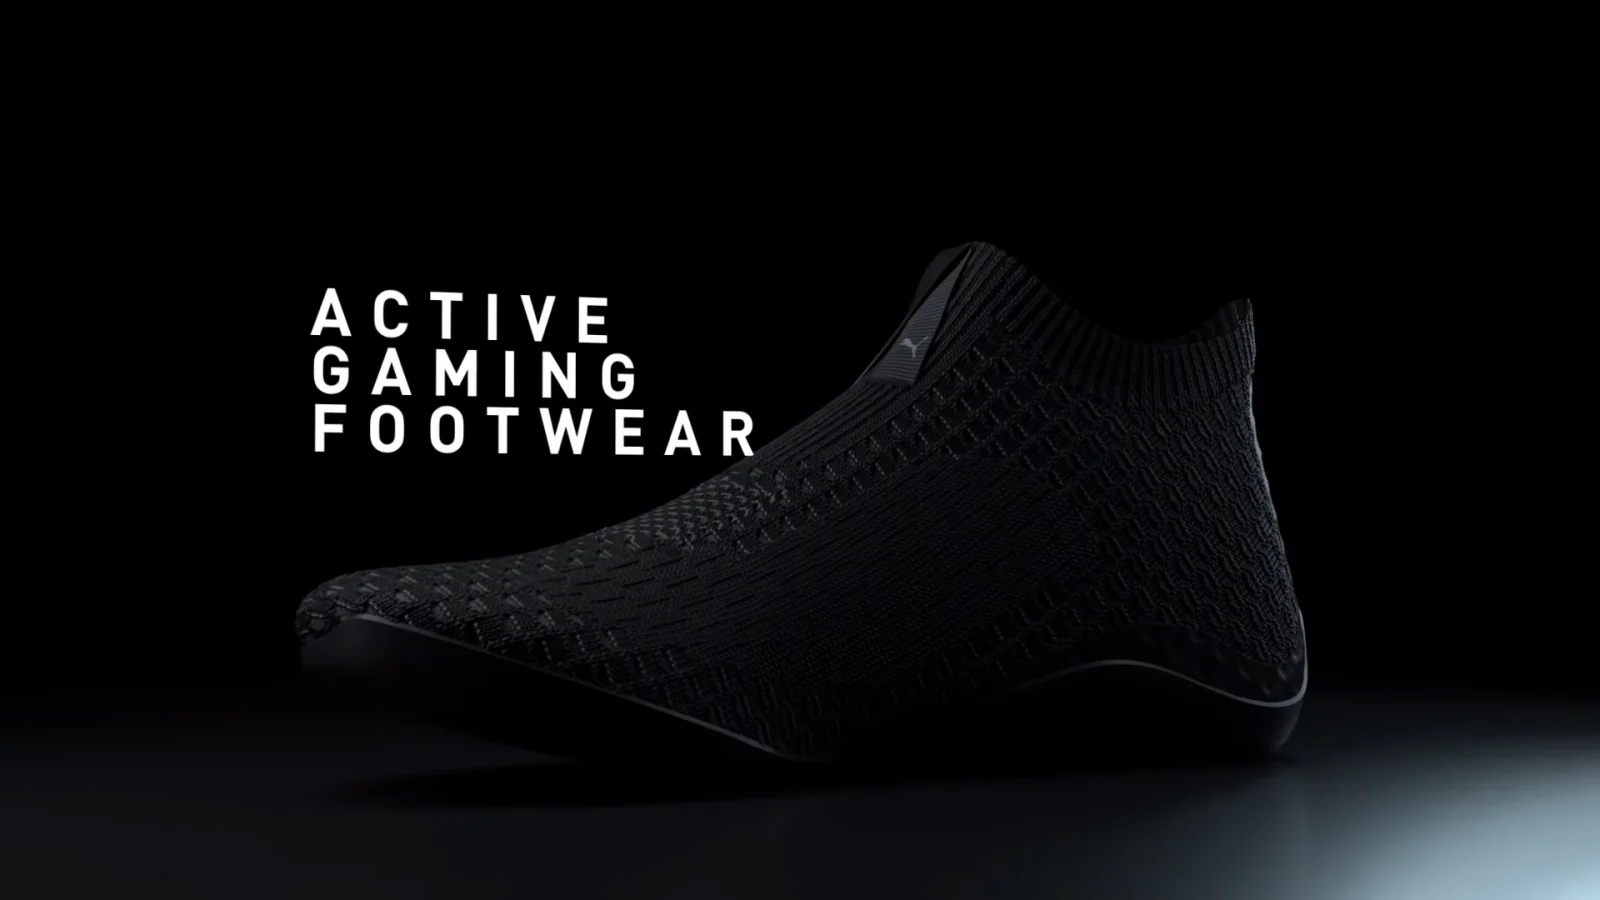 PUMA针对AR/VR游戏环境推出全新“Active Gaming Footwear”